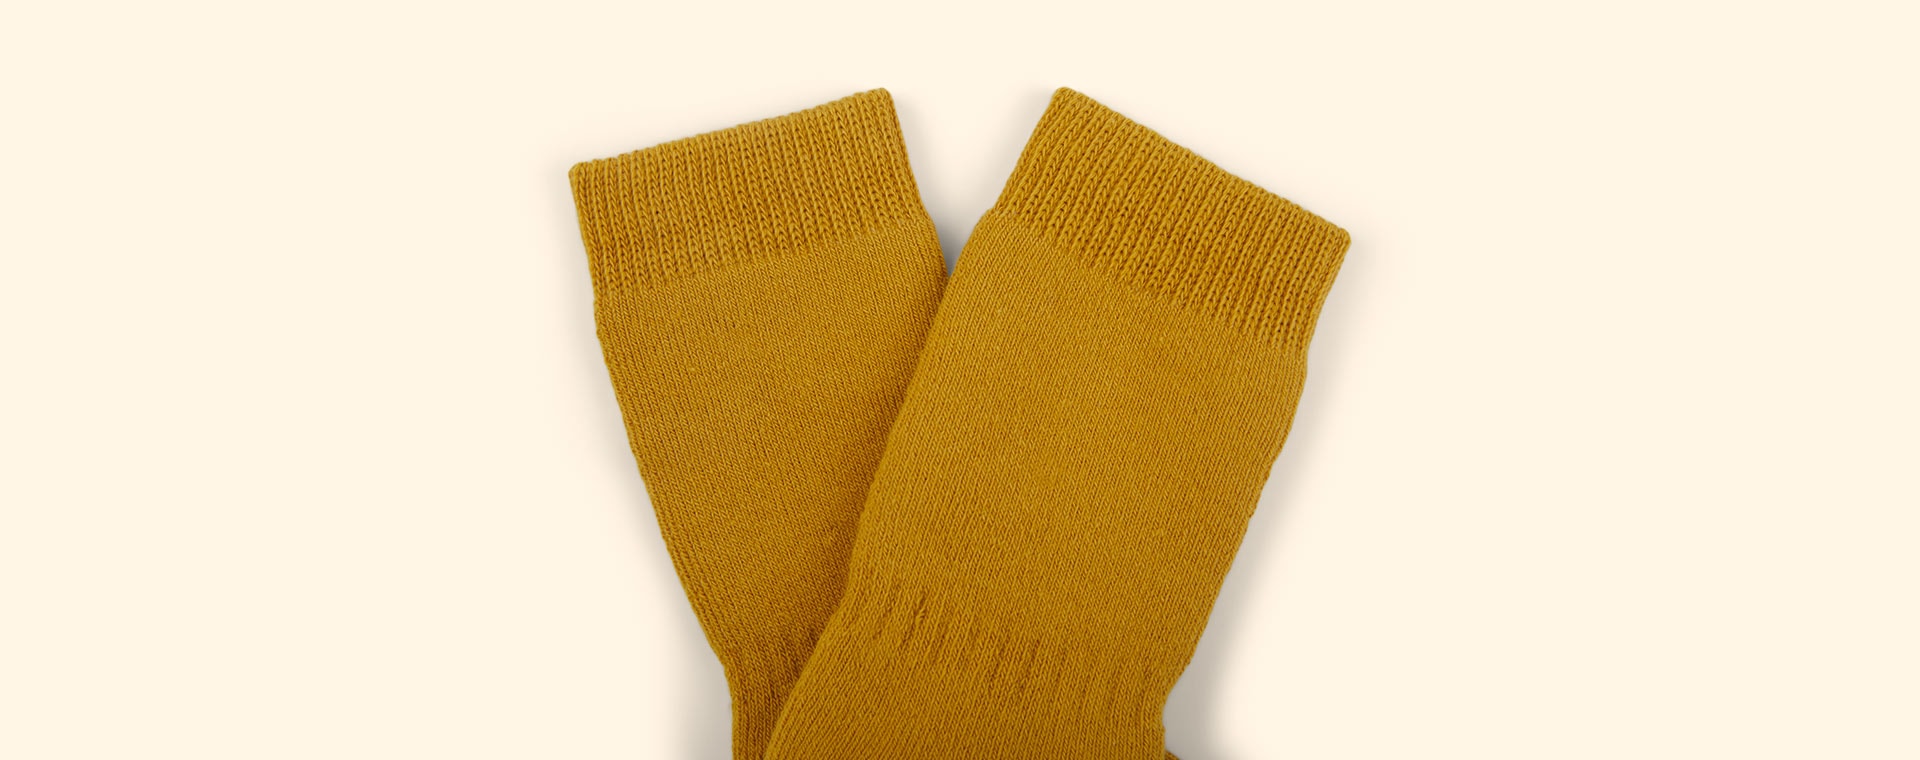 Mustard GoBabyGo Non-Slip Socks